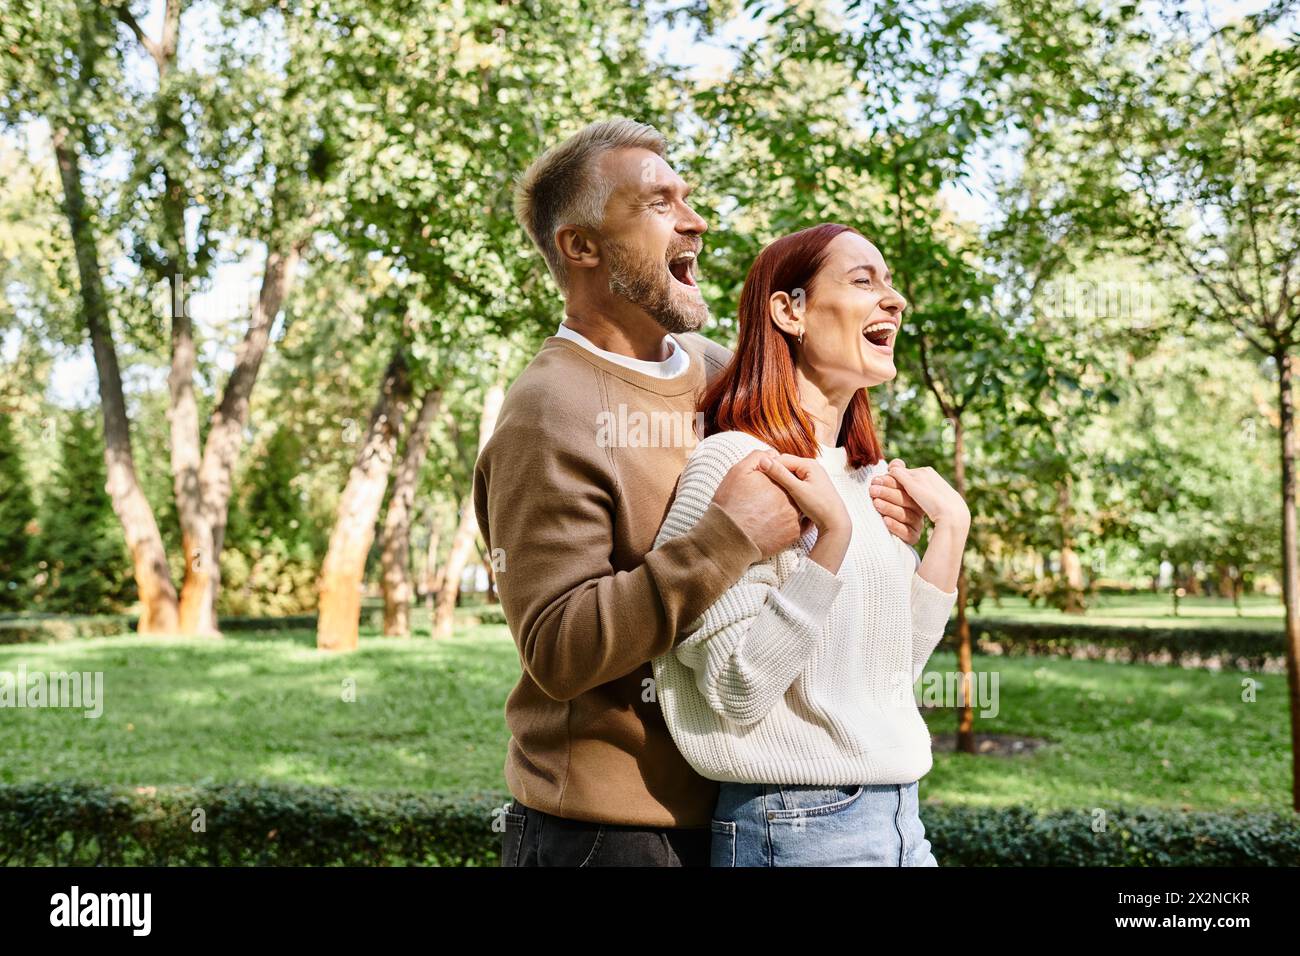 Ein Mann und eine Frau lachen zusammen in einem Park. Stockfoto